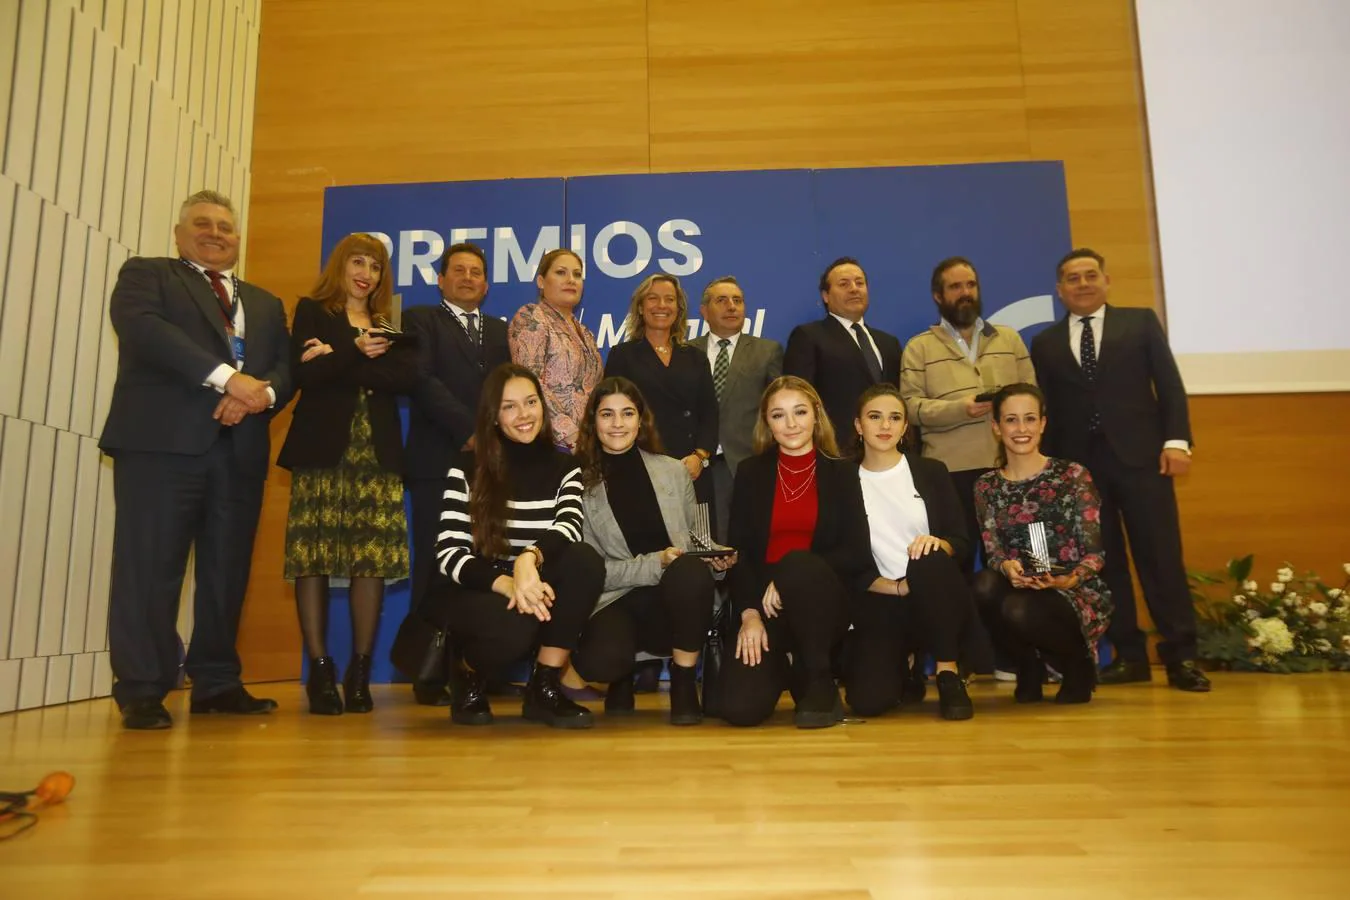 La entrega de los premios de  Fundación Magtel en Córdoba, en imágenes